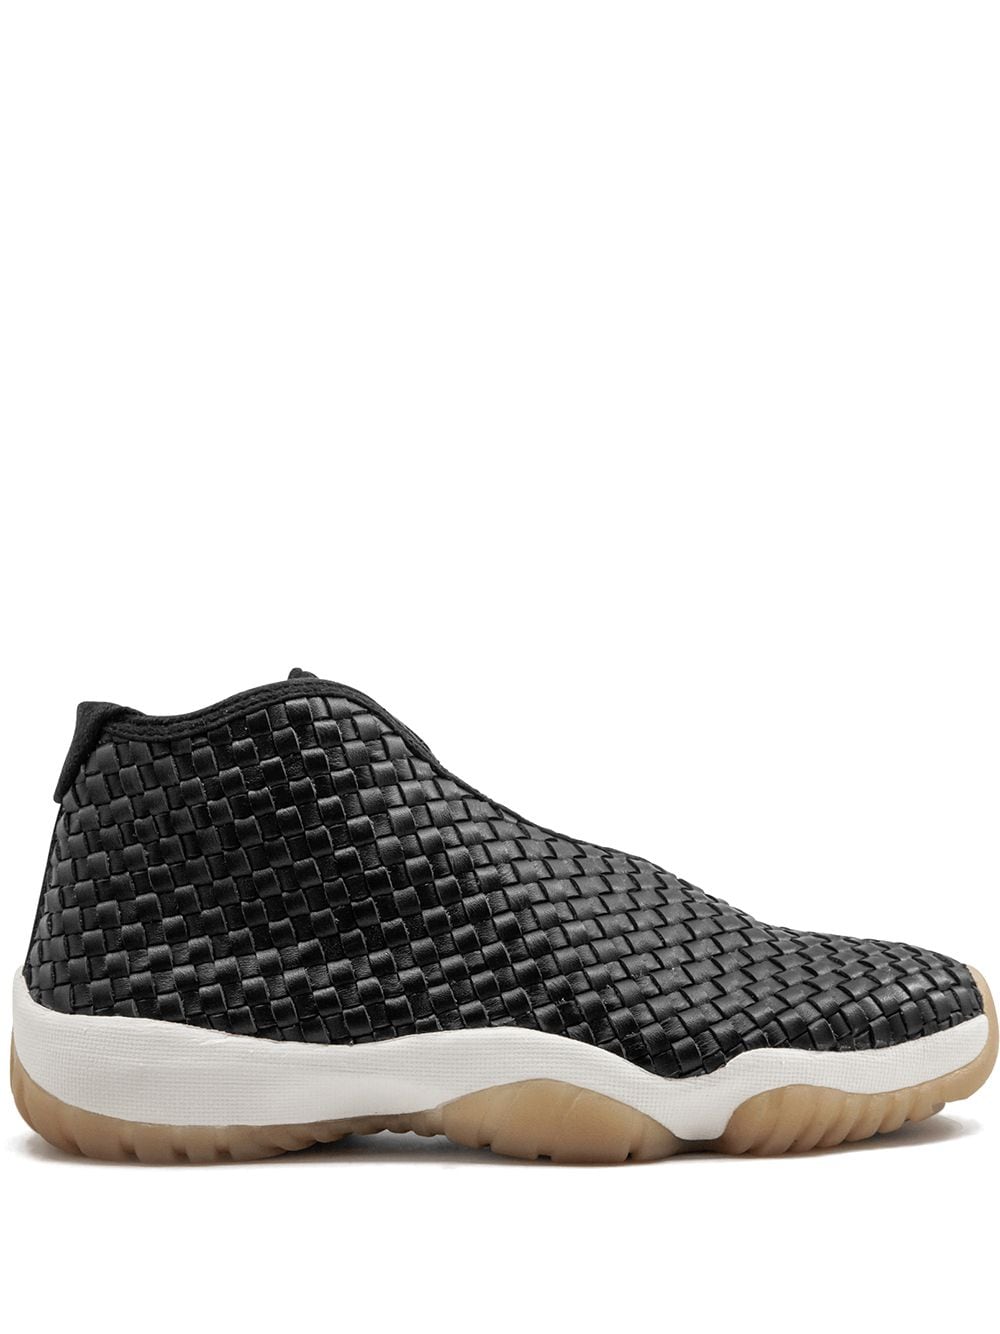 Jordan Future Premium sneakers - Black